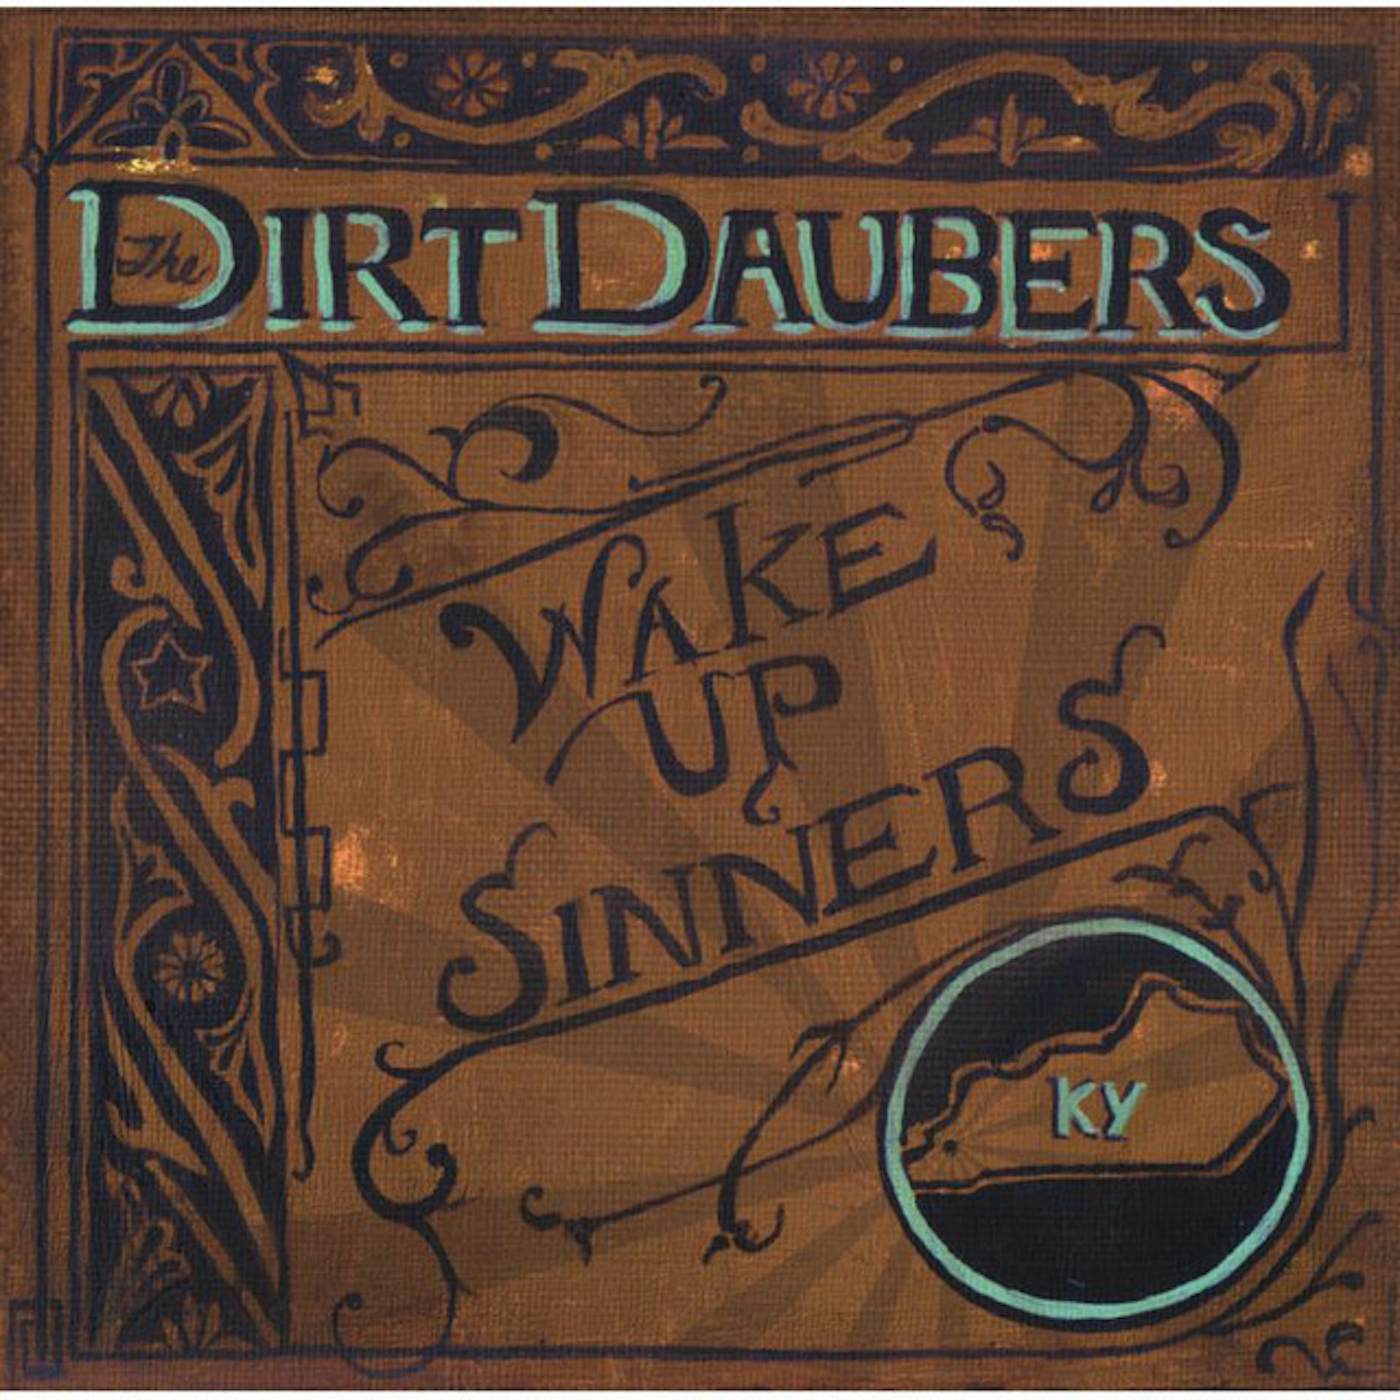 The Dirt Daubers Wake up Sinners Vinyl Record